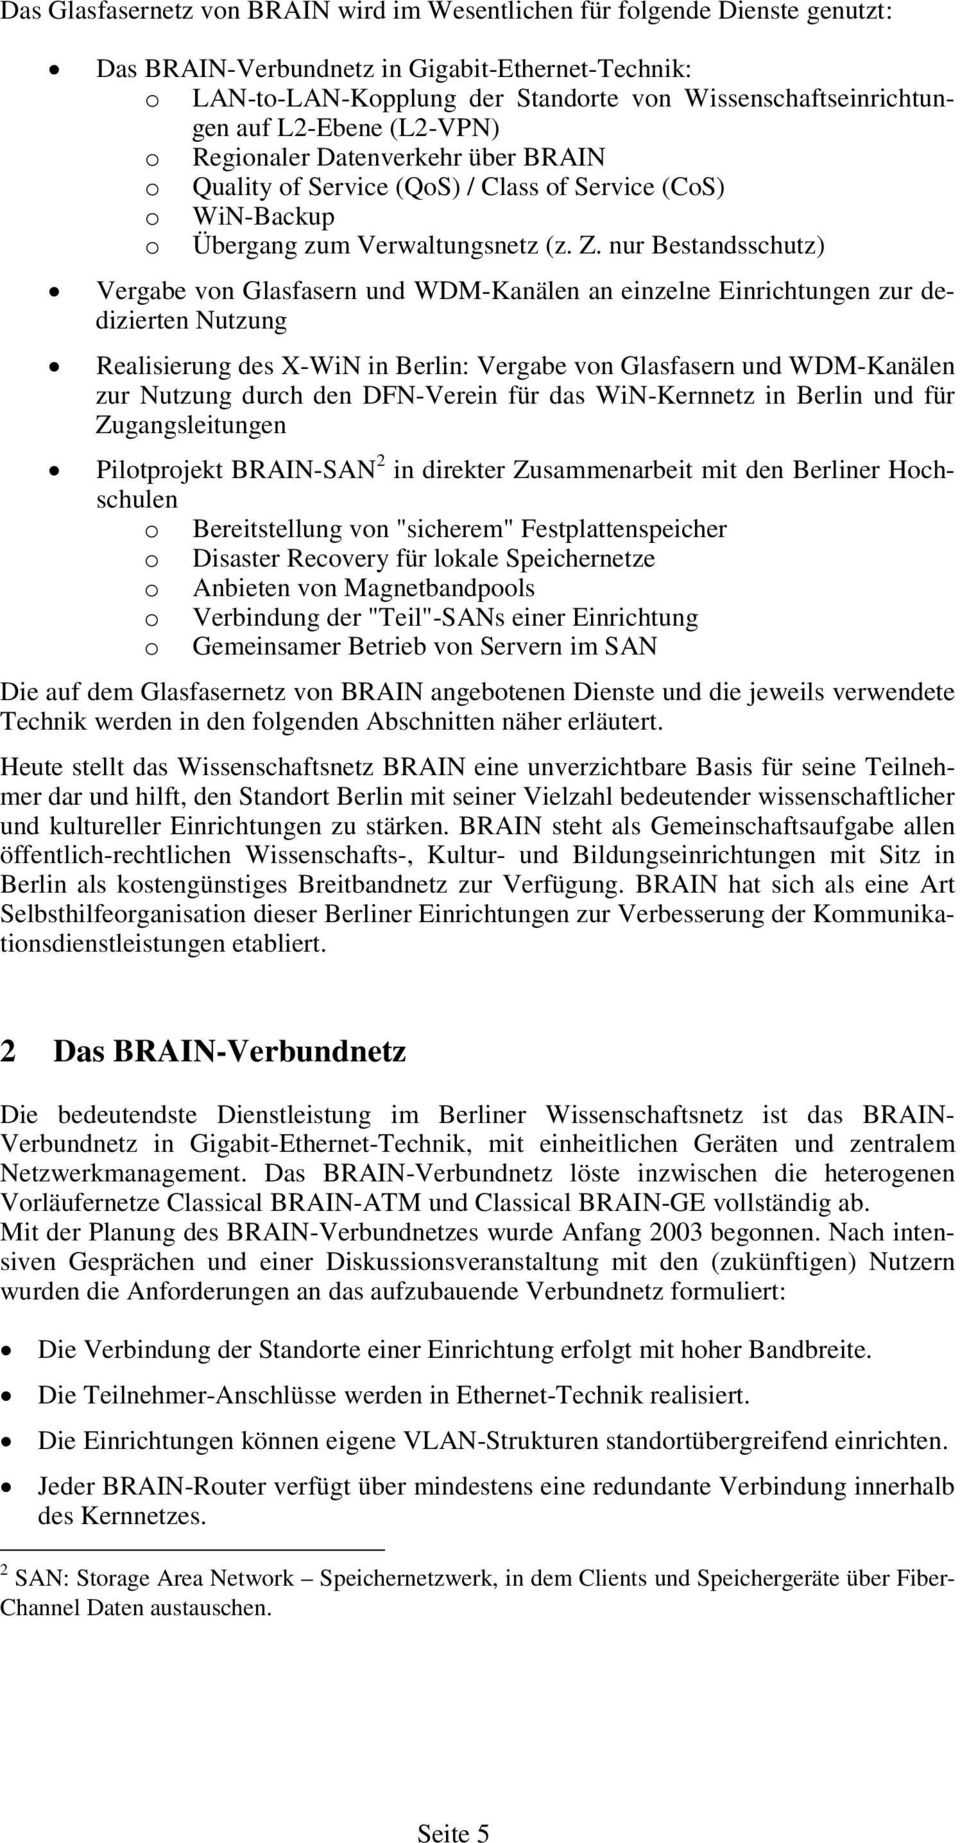 nur Bestandsschutz) Vergabe von Glasfasern und WDM-Kanälen an einzelne Einrichtungen zur dedizierten Nutzung Realisierung des X-WiN in Berlin: Vergabe von Glasfasern und WDM-Kanälen zur Nutzung durch